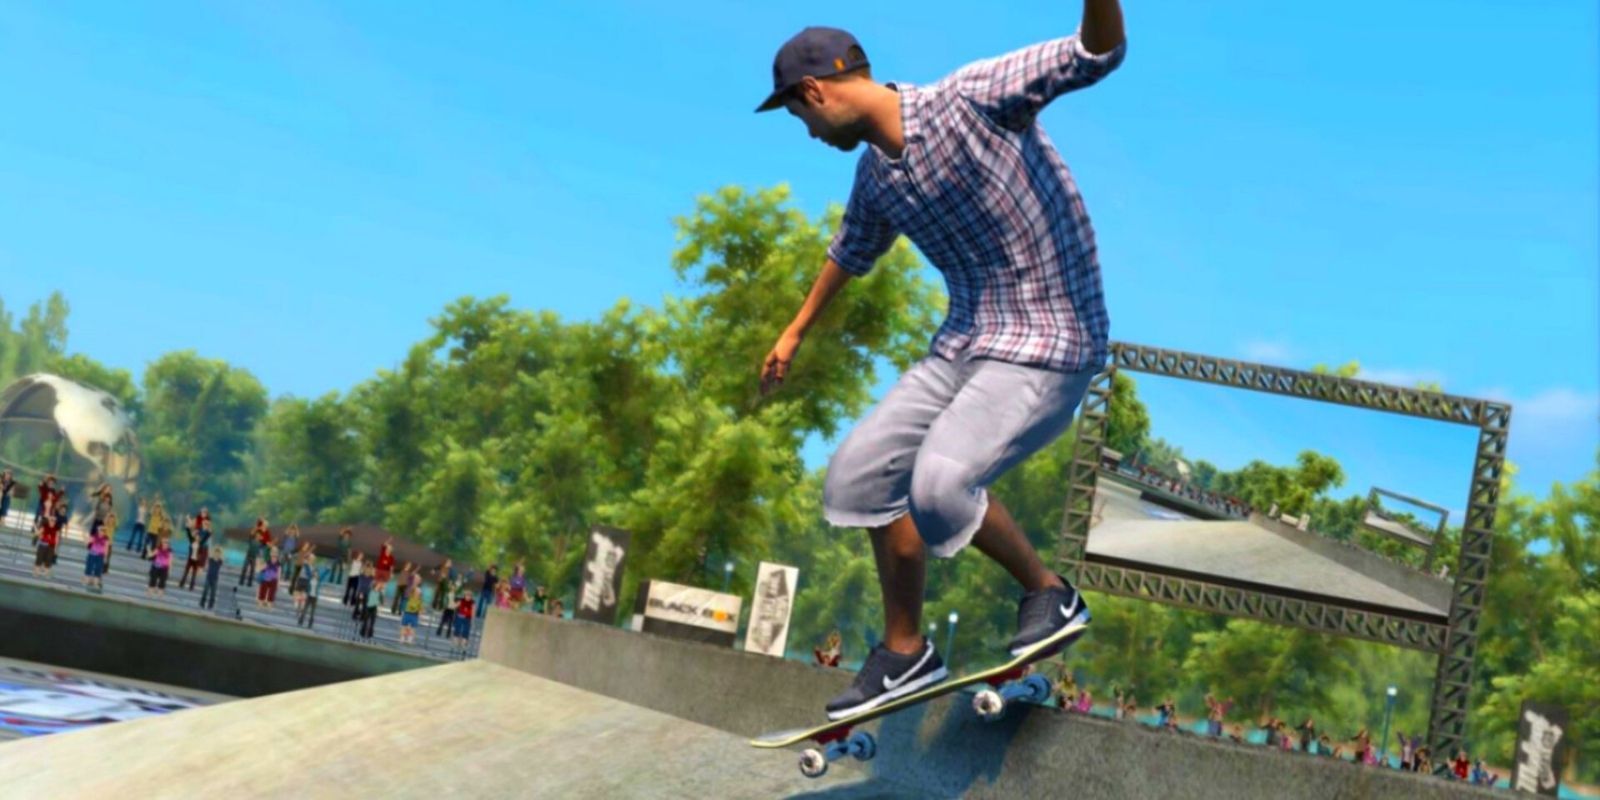 Skate 4: Após 10 anos, novo game é finalmente anunciado